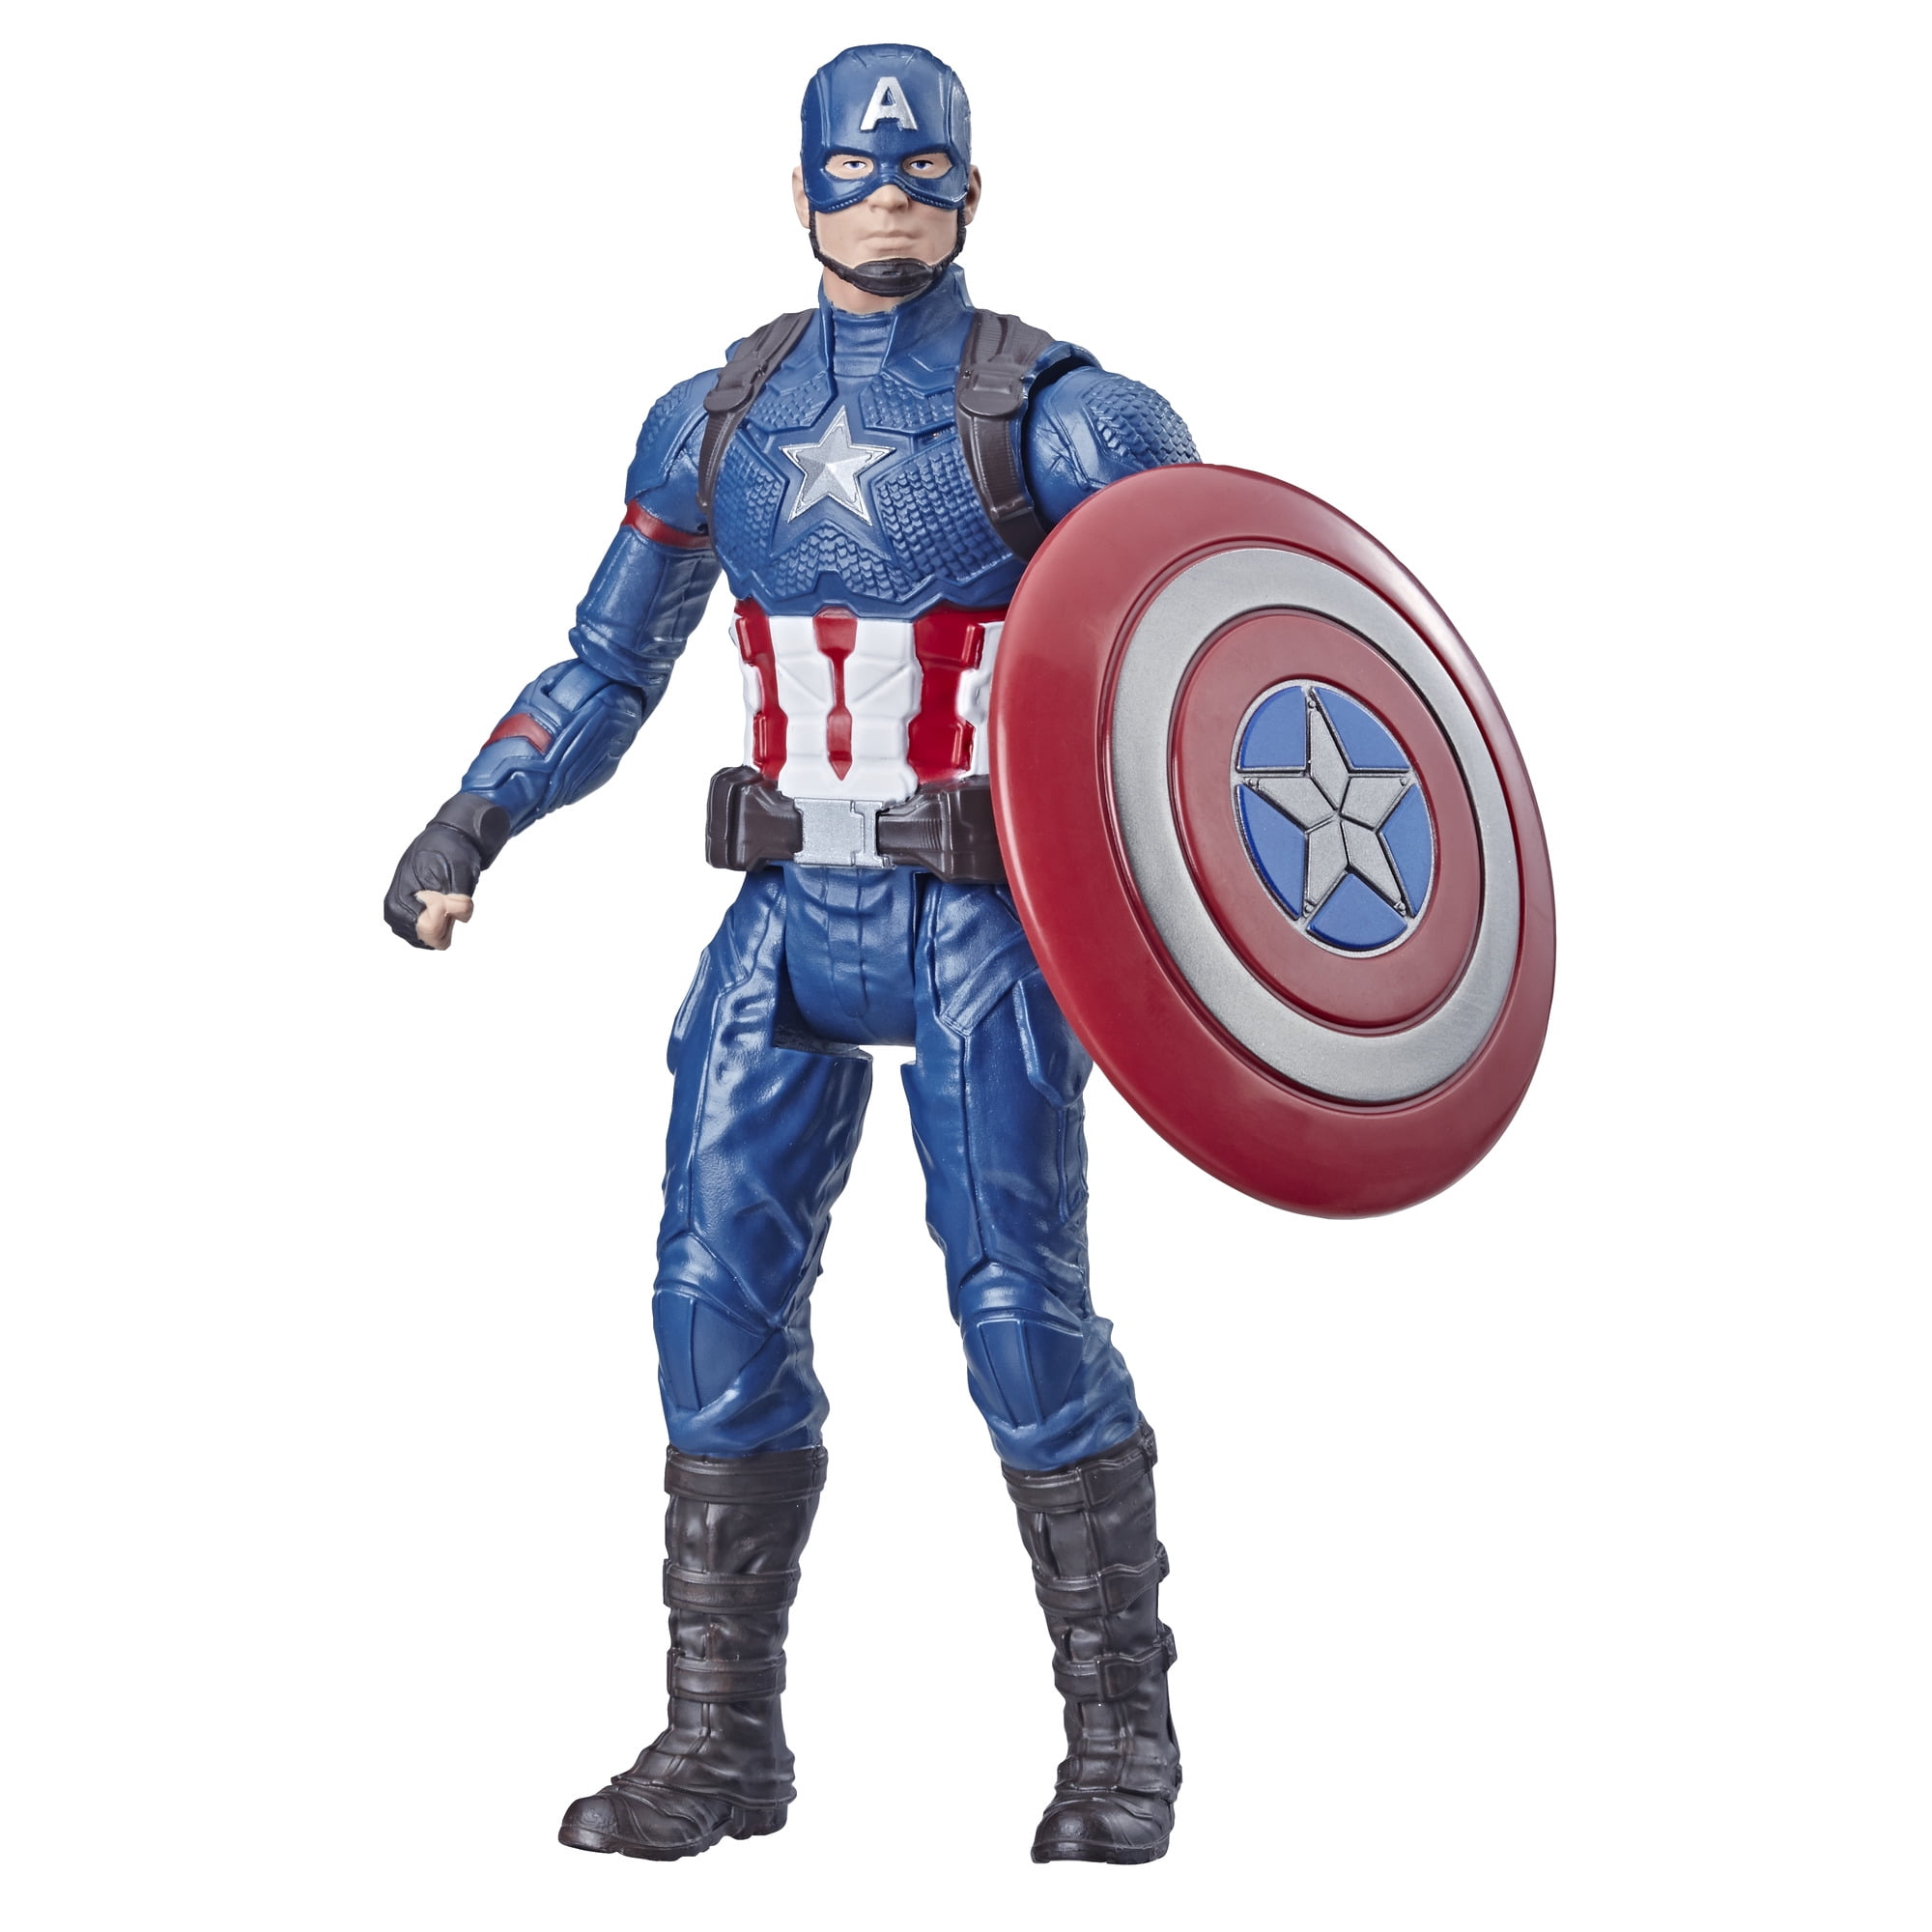 The Avenger Super Hero Captain America Shield Helmet Cosplay for Kids Toy Action 